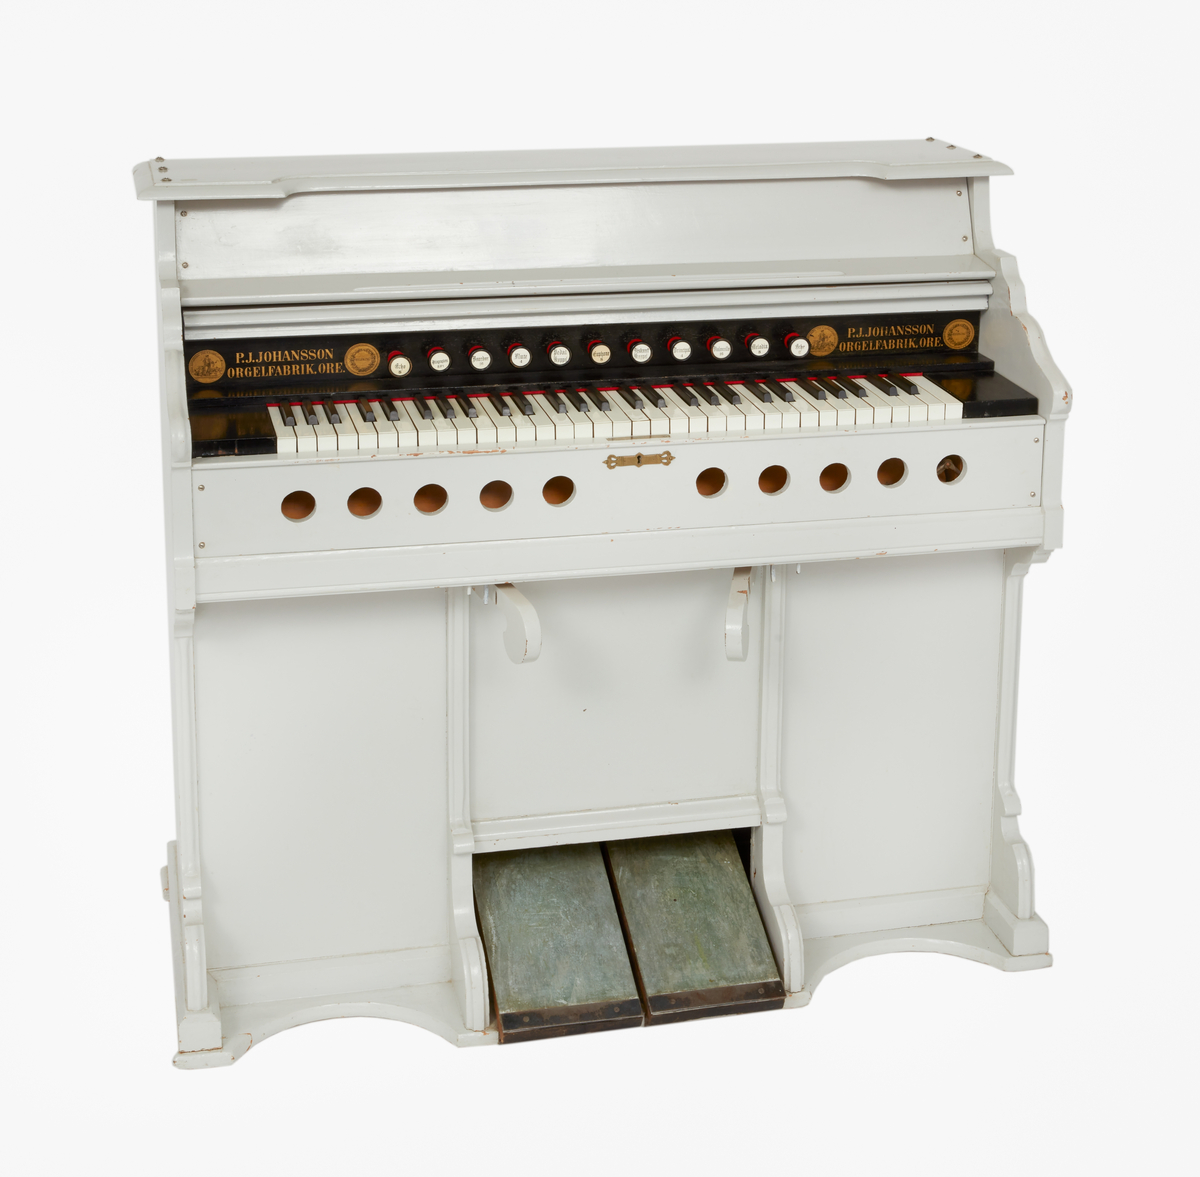 Orgel, vit.

Tillverkad av P J Johanssons orgelfabrik i Ore.